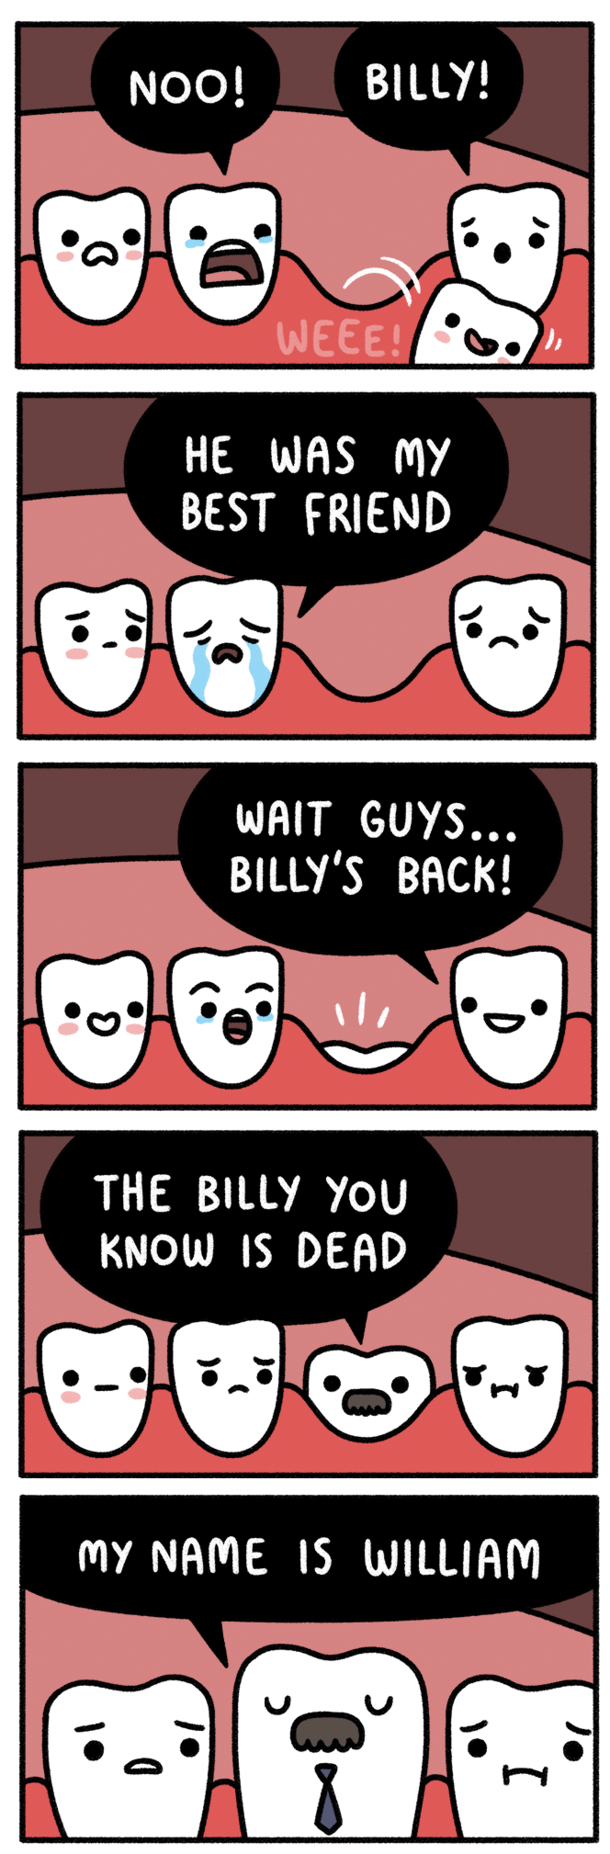 Baby teeth